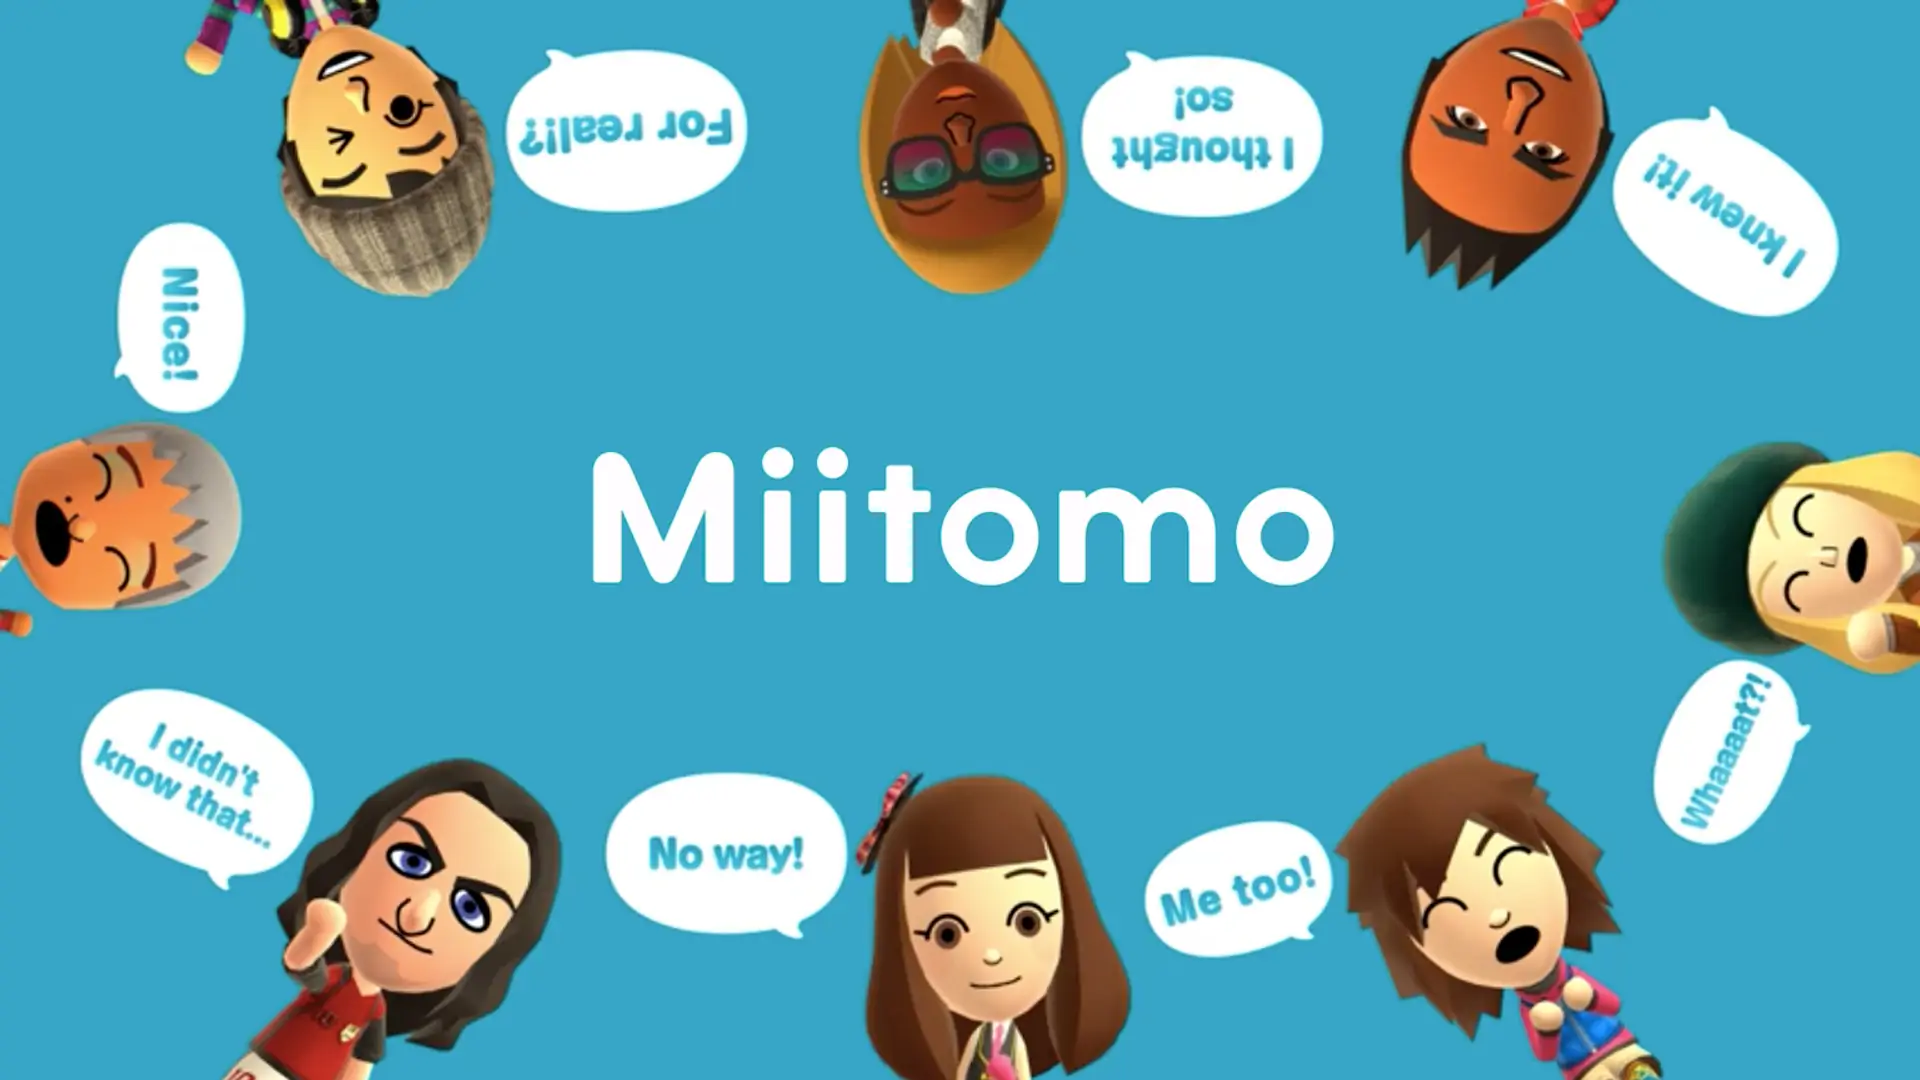 任天堂正式制作的第一款智能手机游戏《Miitomo》正式发布